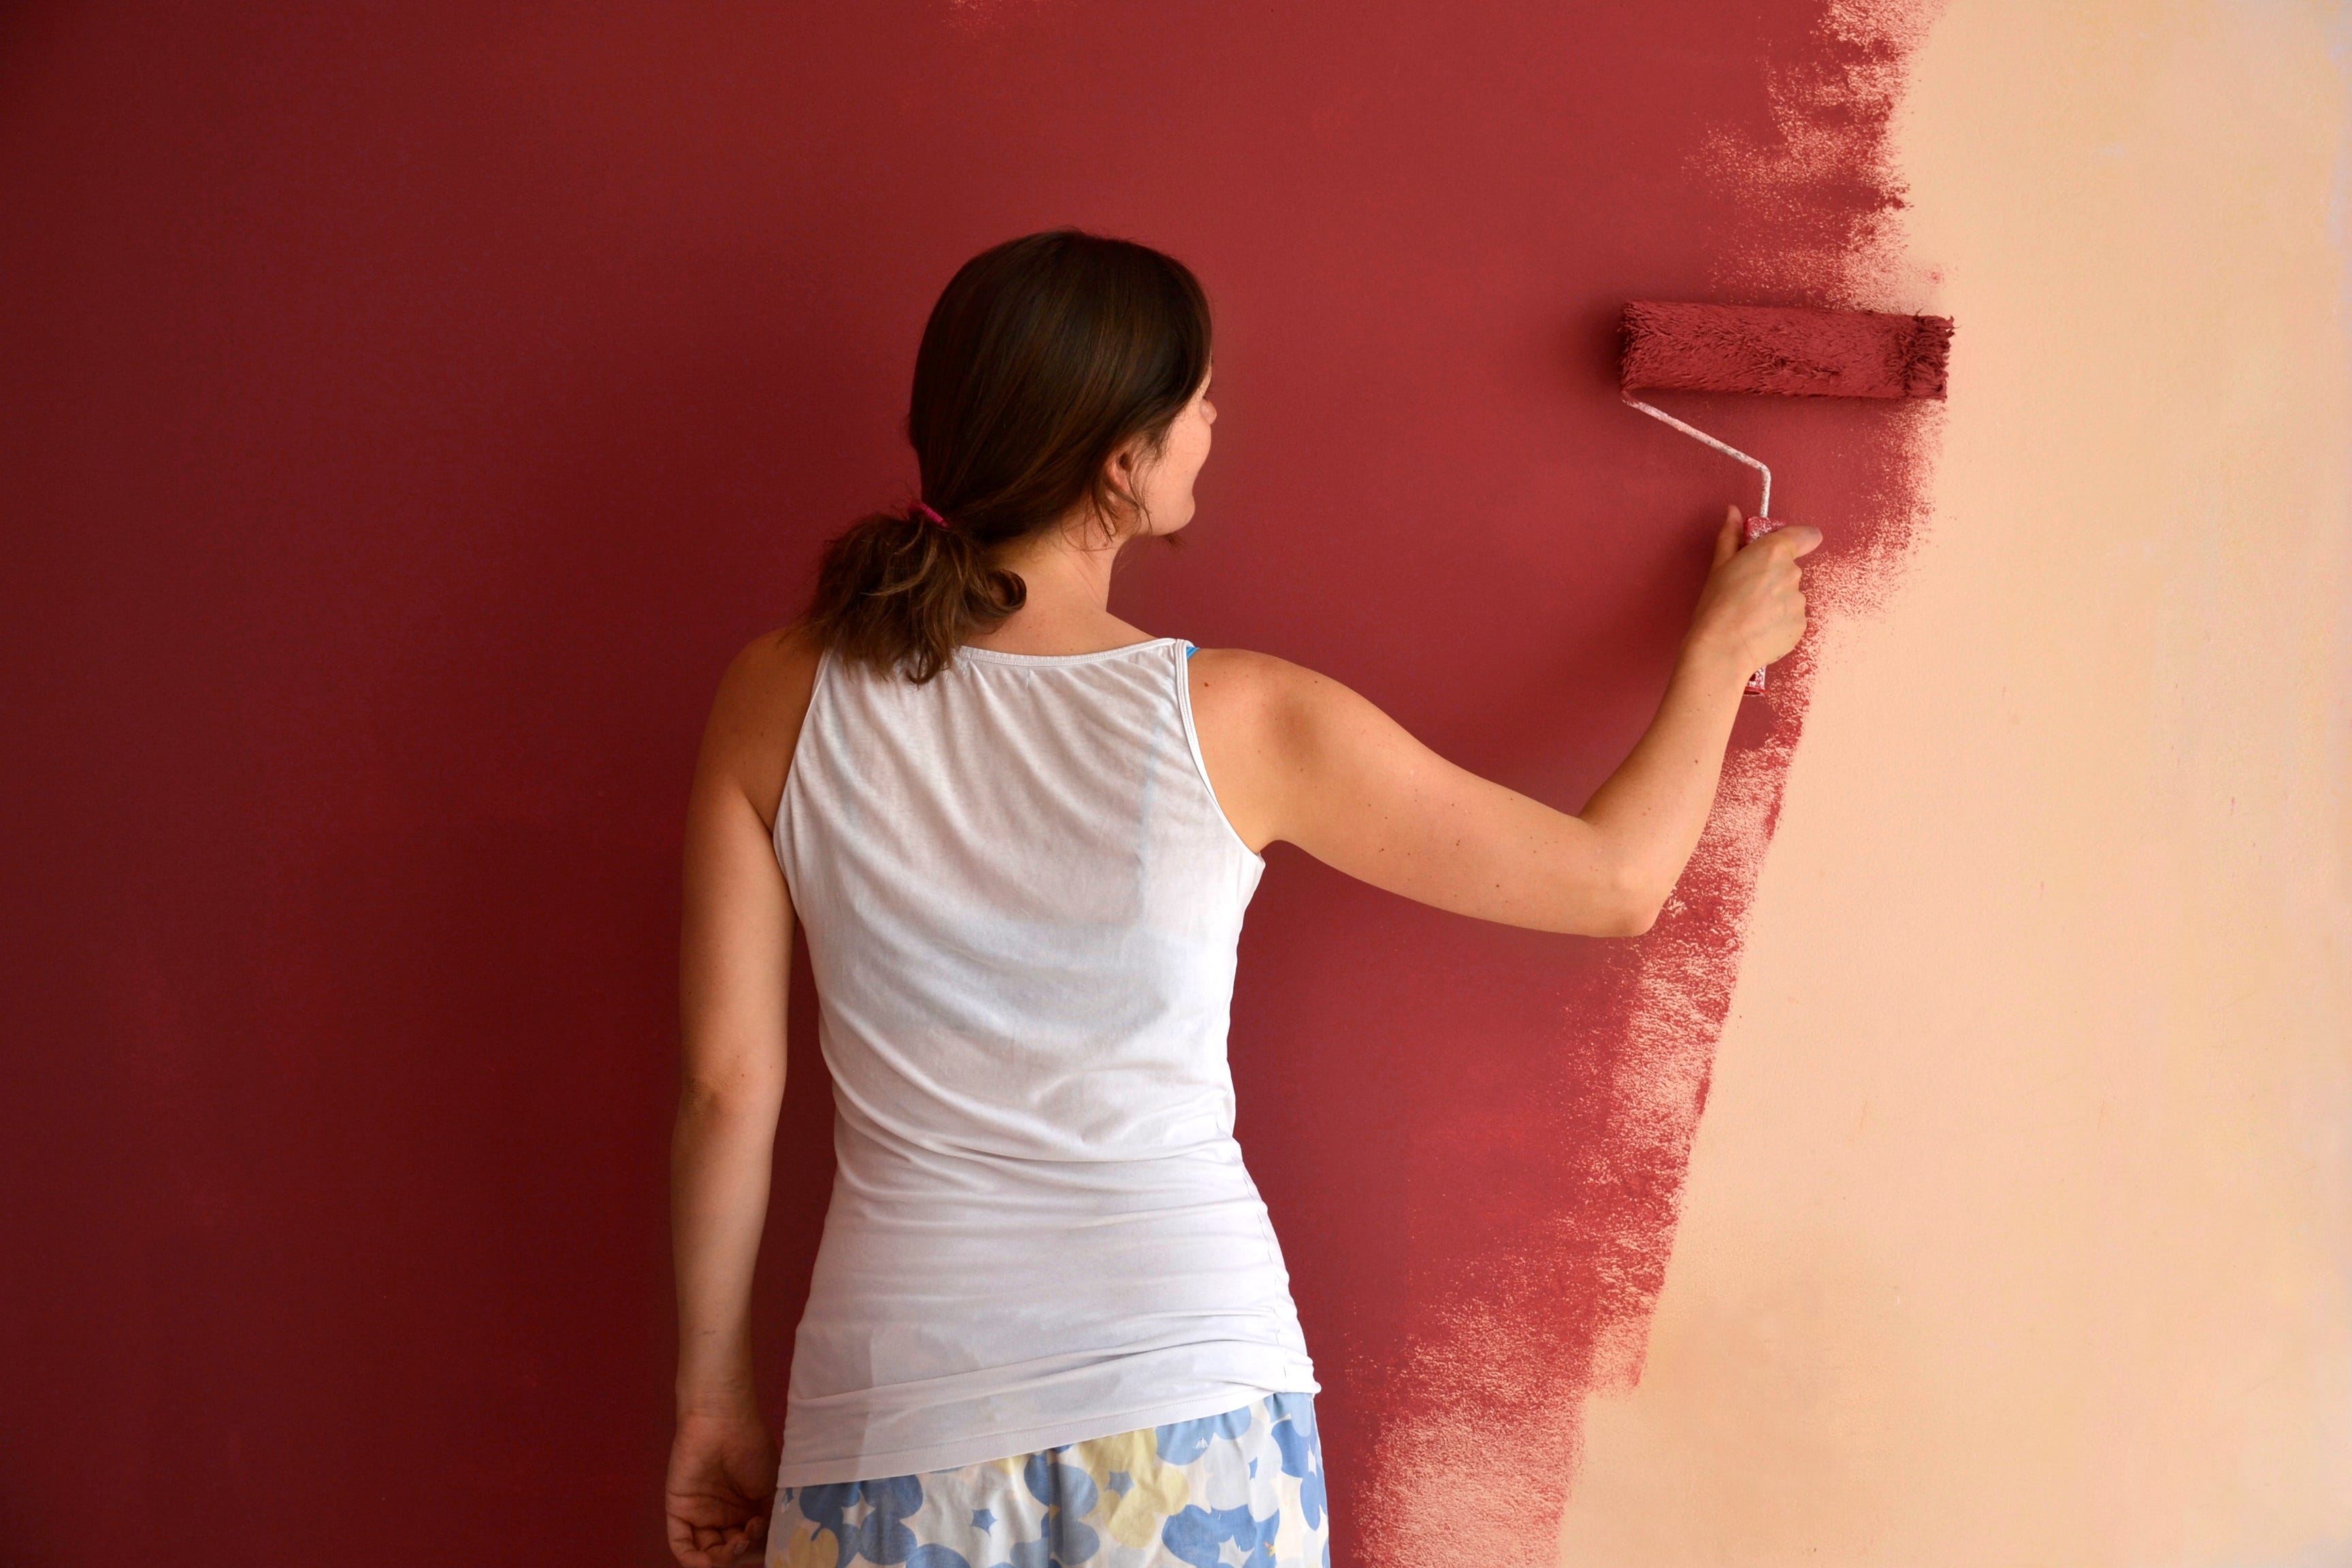 Что лучше обои или покраска стен: критерии выбора, плюсы и недостатки